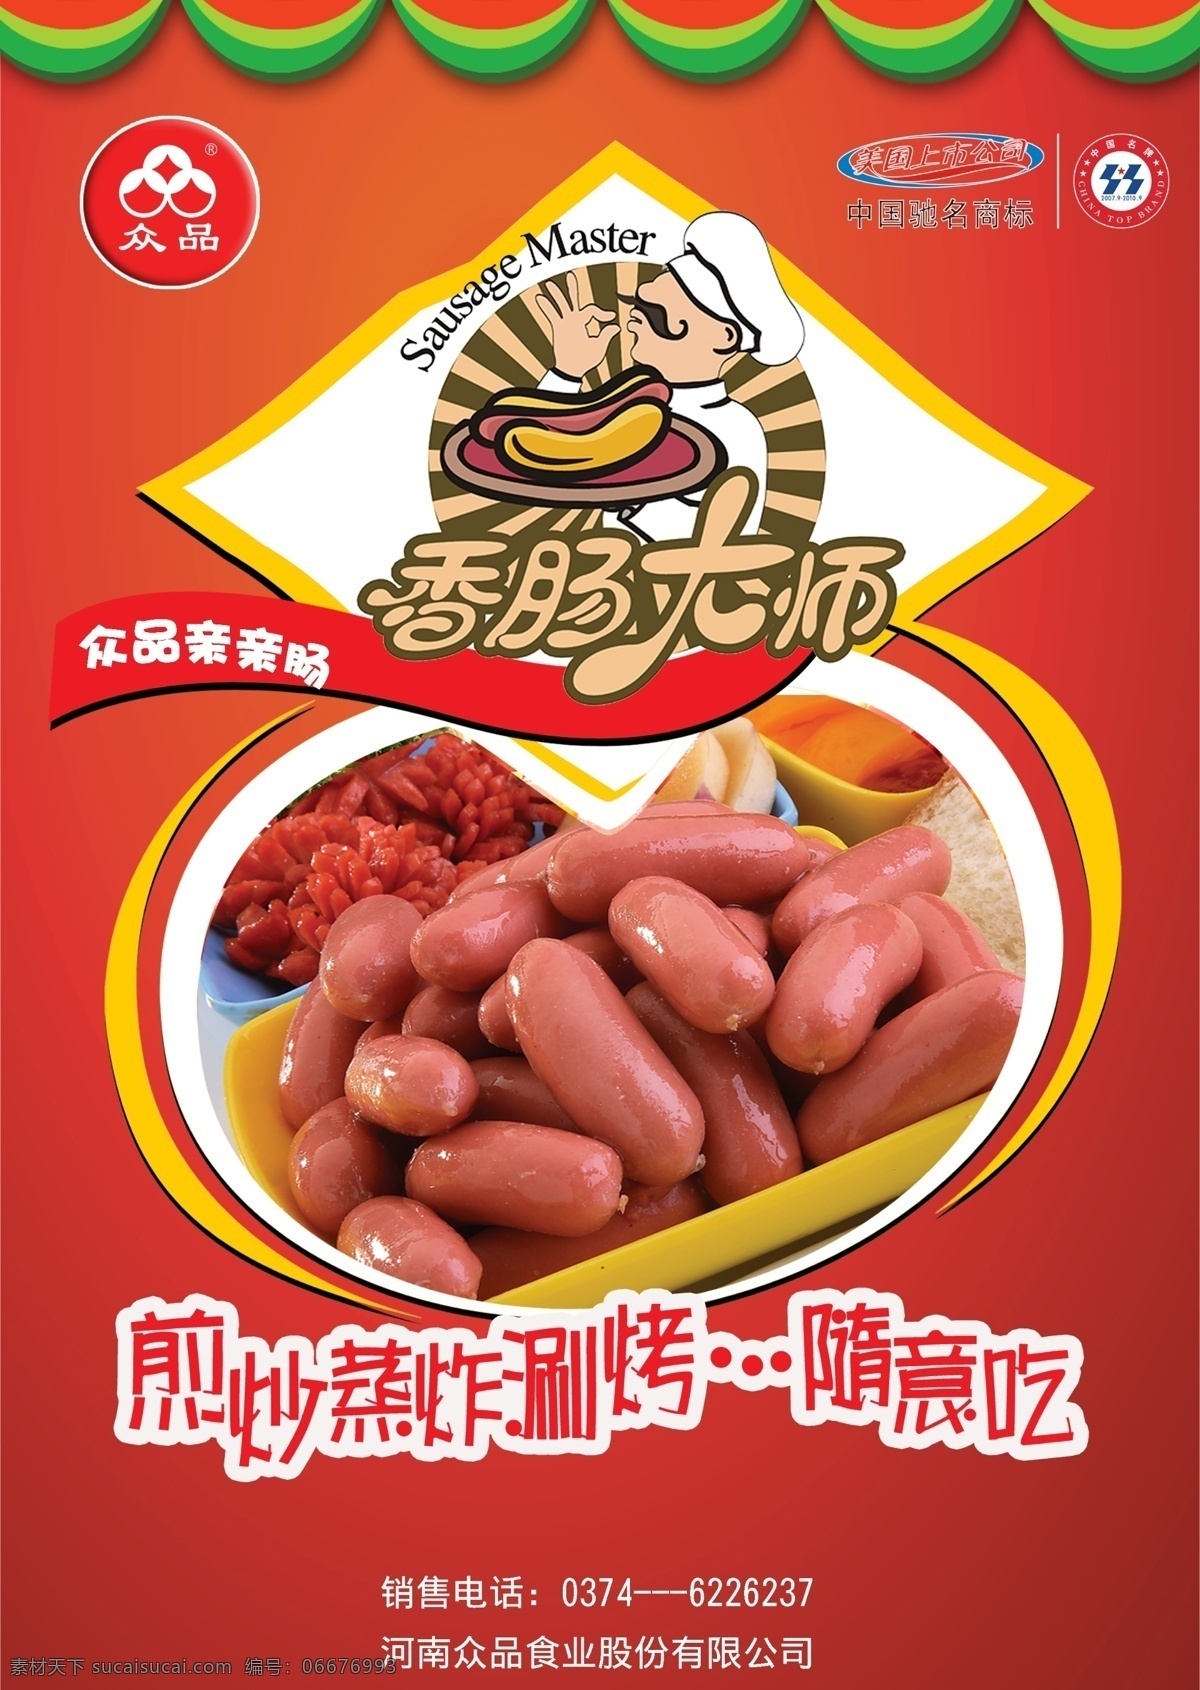 肉制品 亲亲 肠 海报 香肠大师 广告设计模板 源文件